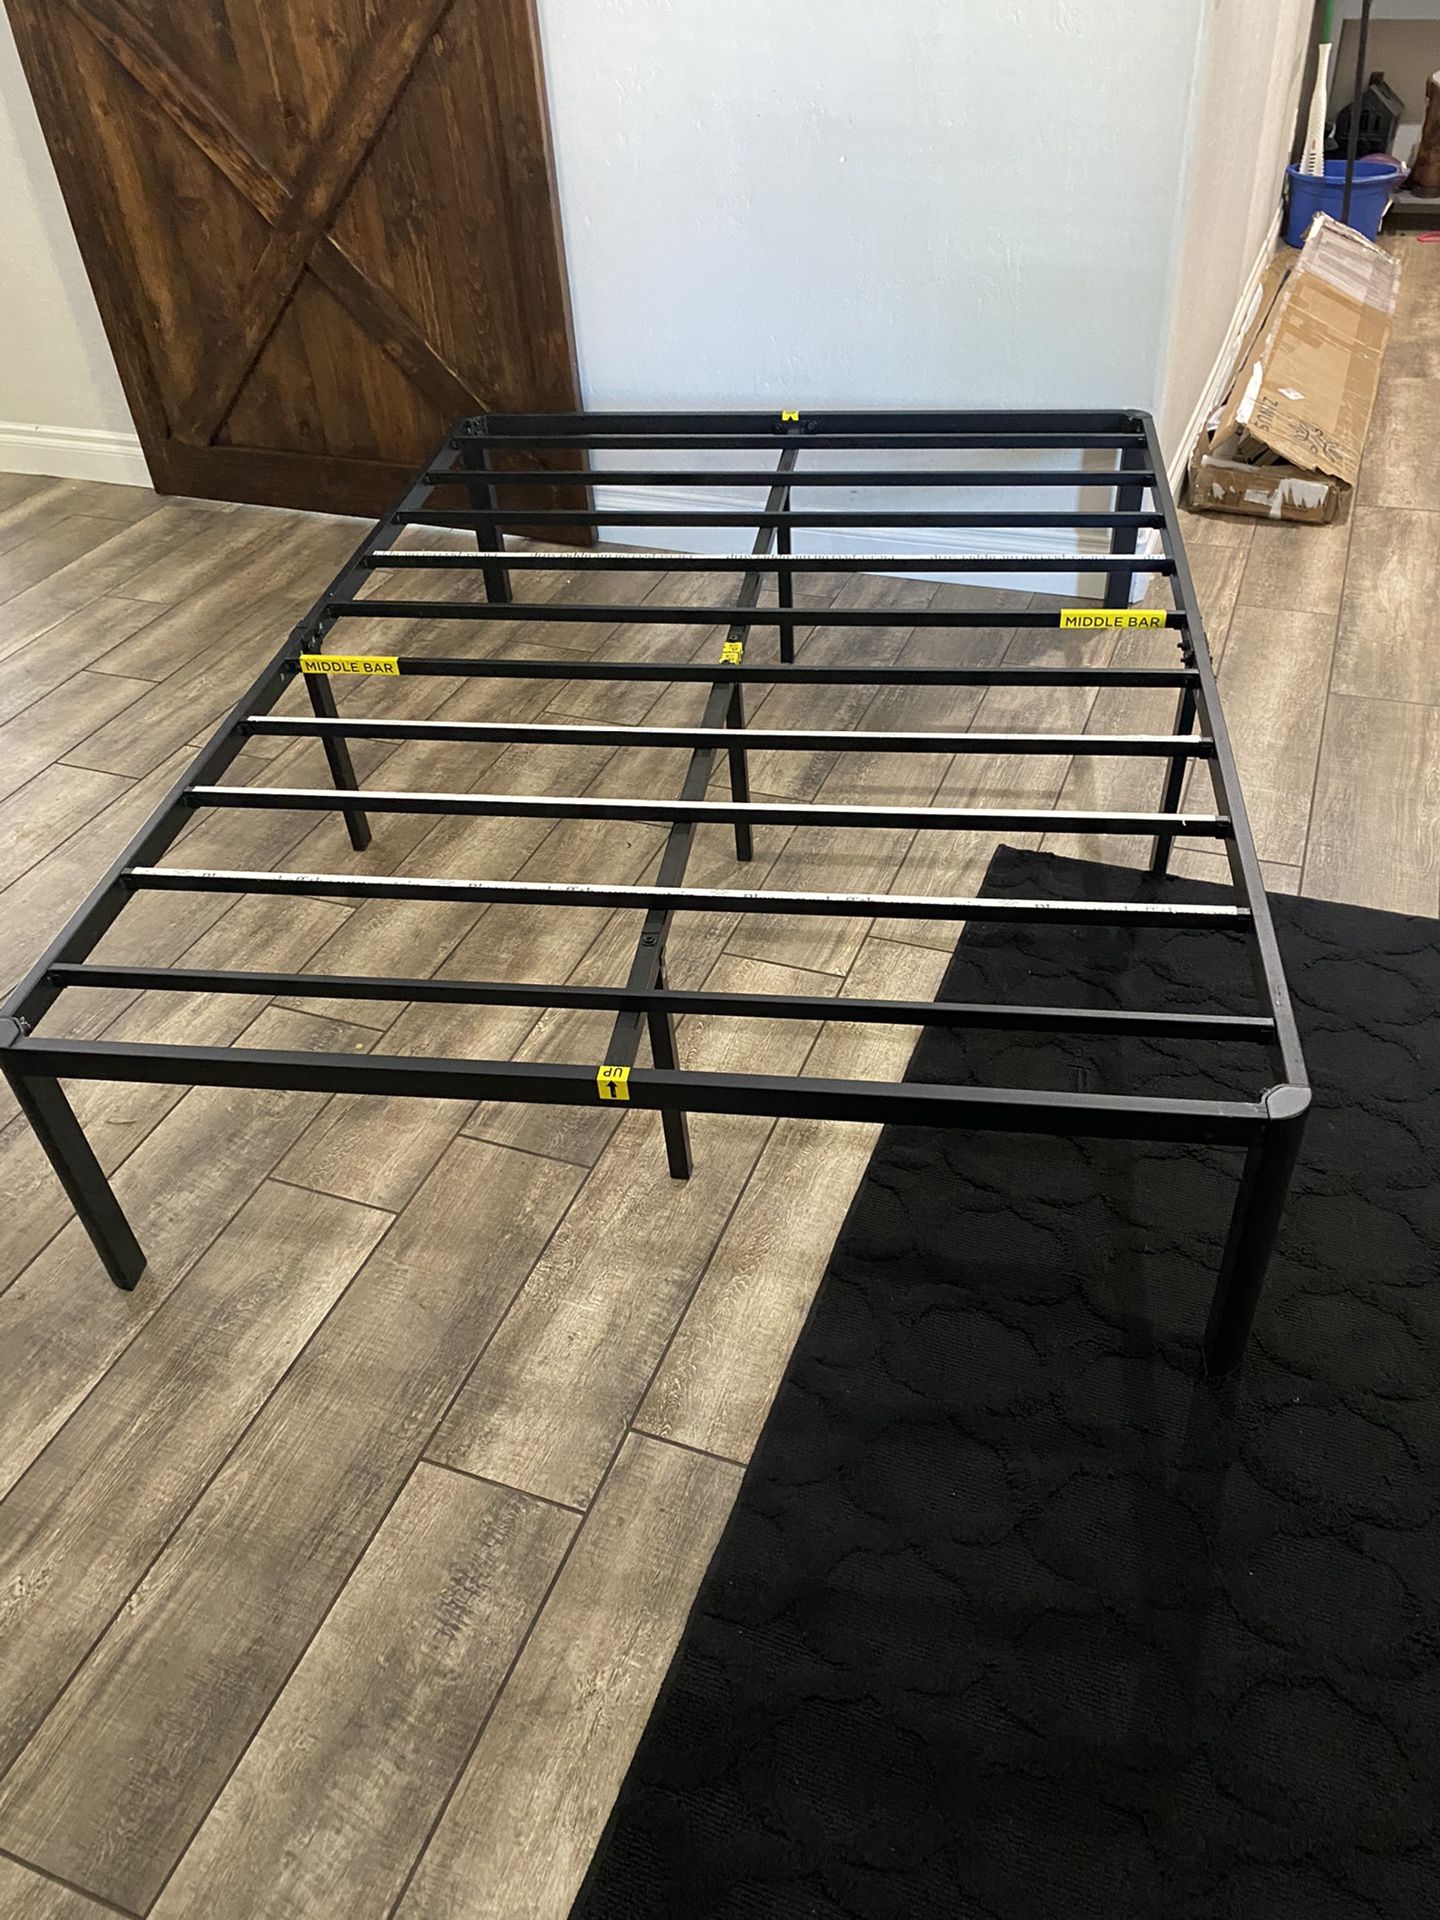 Full size platform bed bed frame. Brand new 16” tall FULL